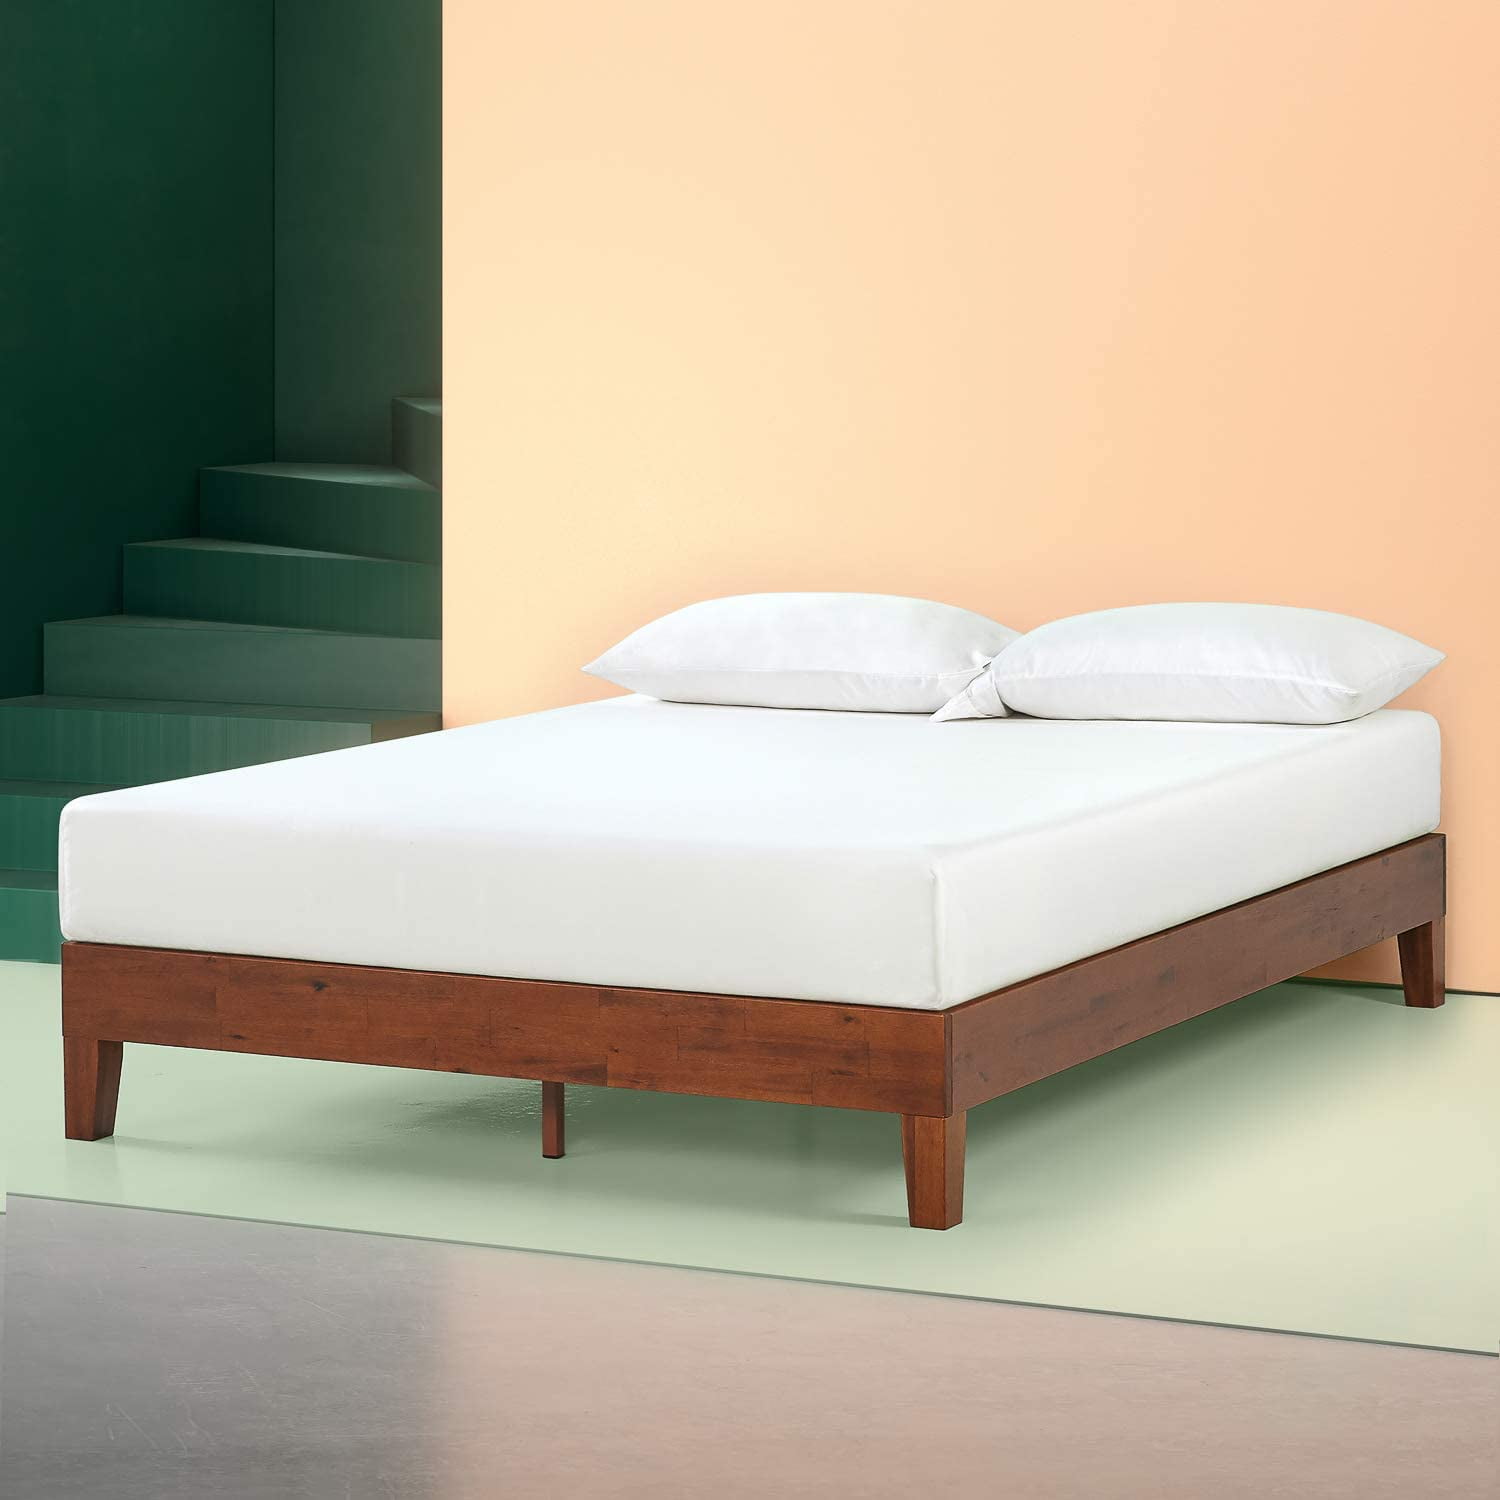 Deluxe Wood Platform Bed Frame, Wood Platform Bed Headboard